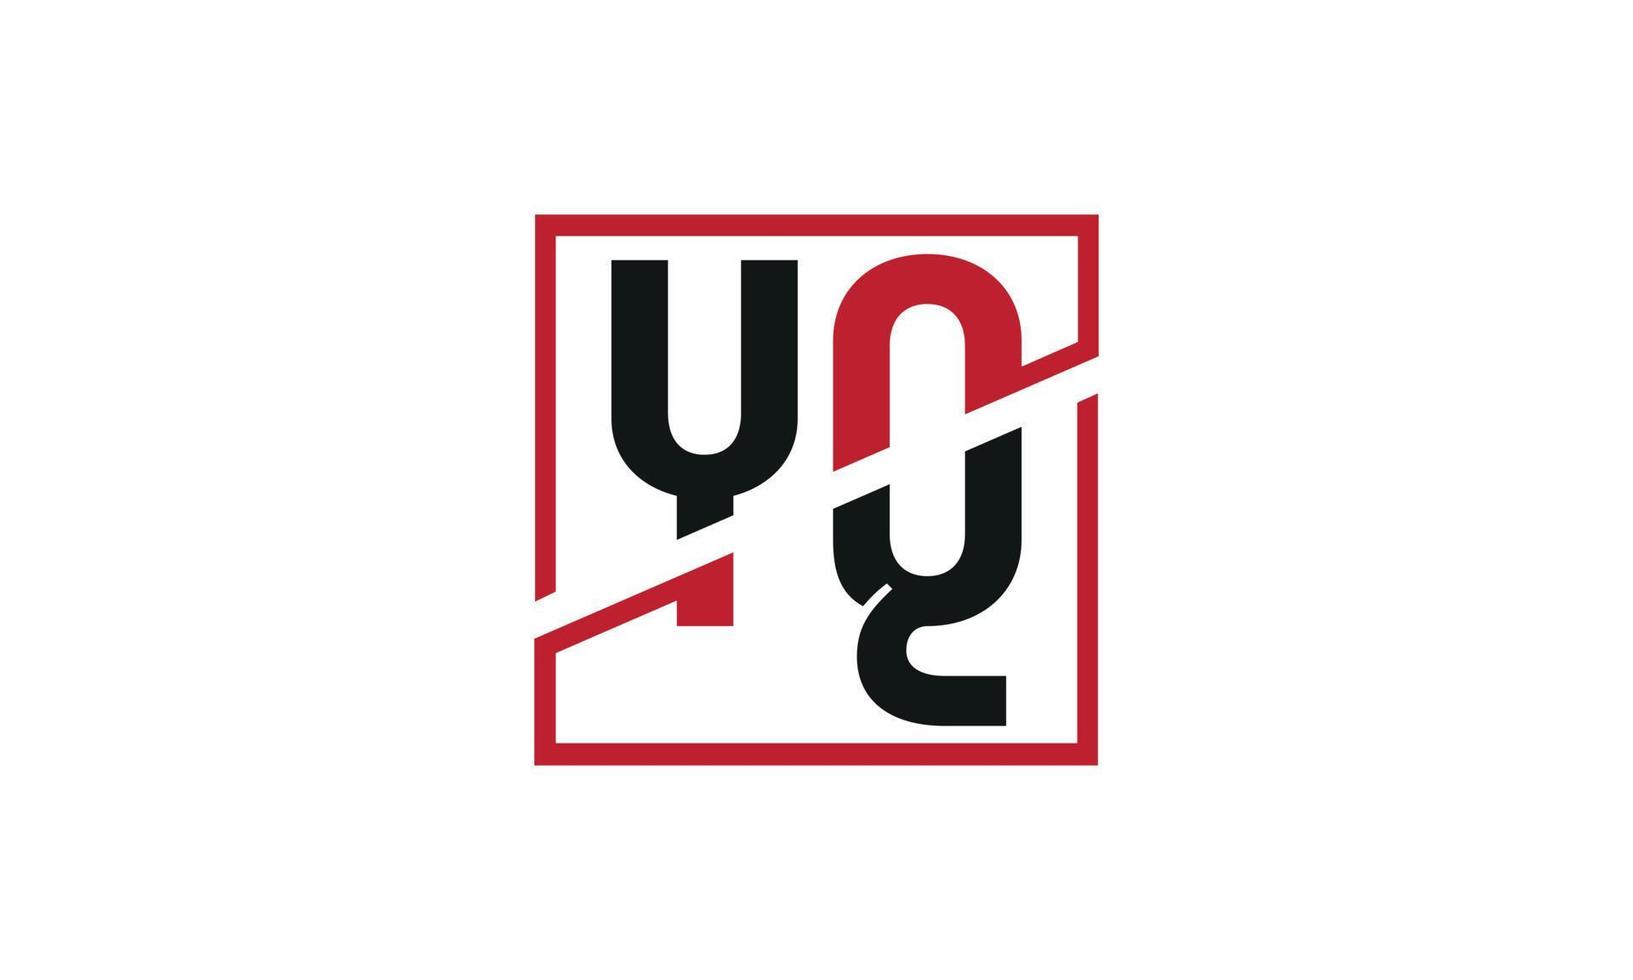 lettera yq logo professionista vettore file professionista vettore